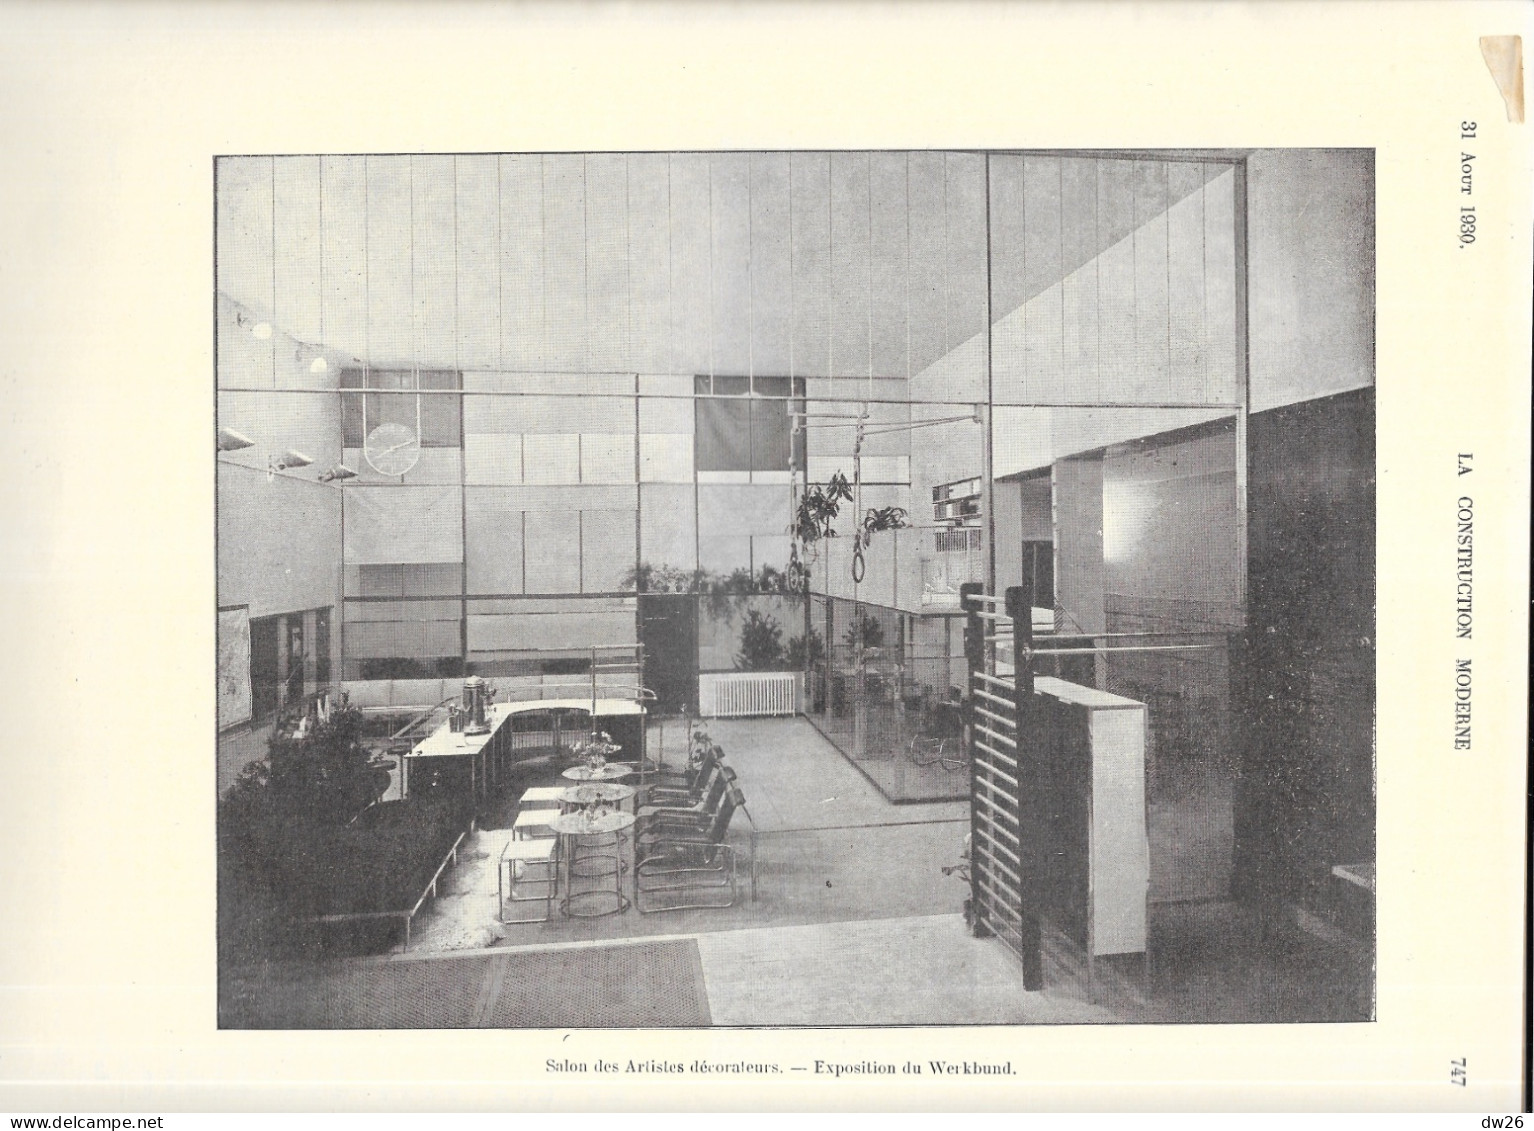 Revue Hebdomadaire D'Architecture - La Construction Moderne N° 48 Du 31 Août 1930 - Bricolage / Technique